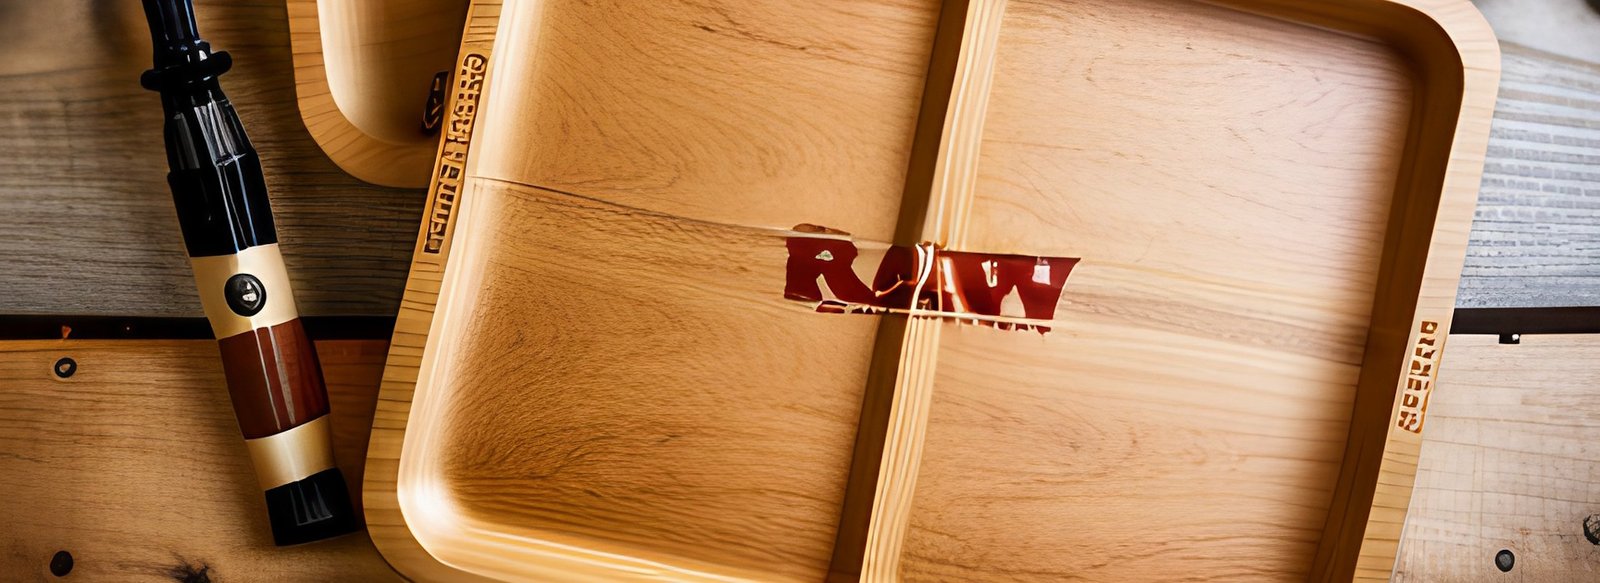 raw rolling tray wood